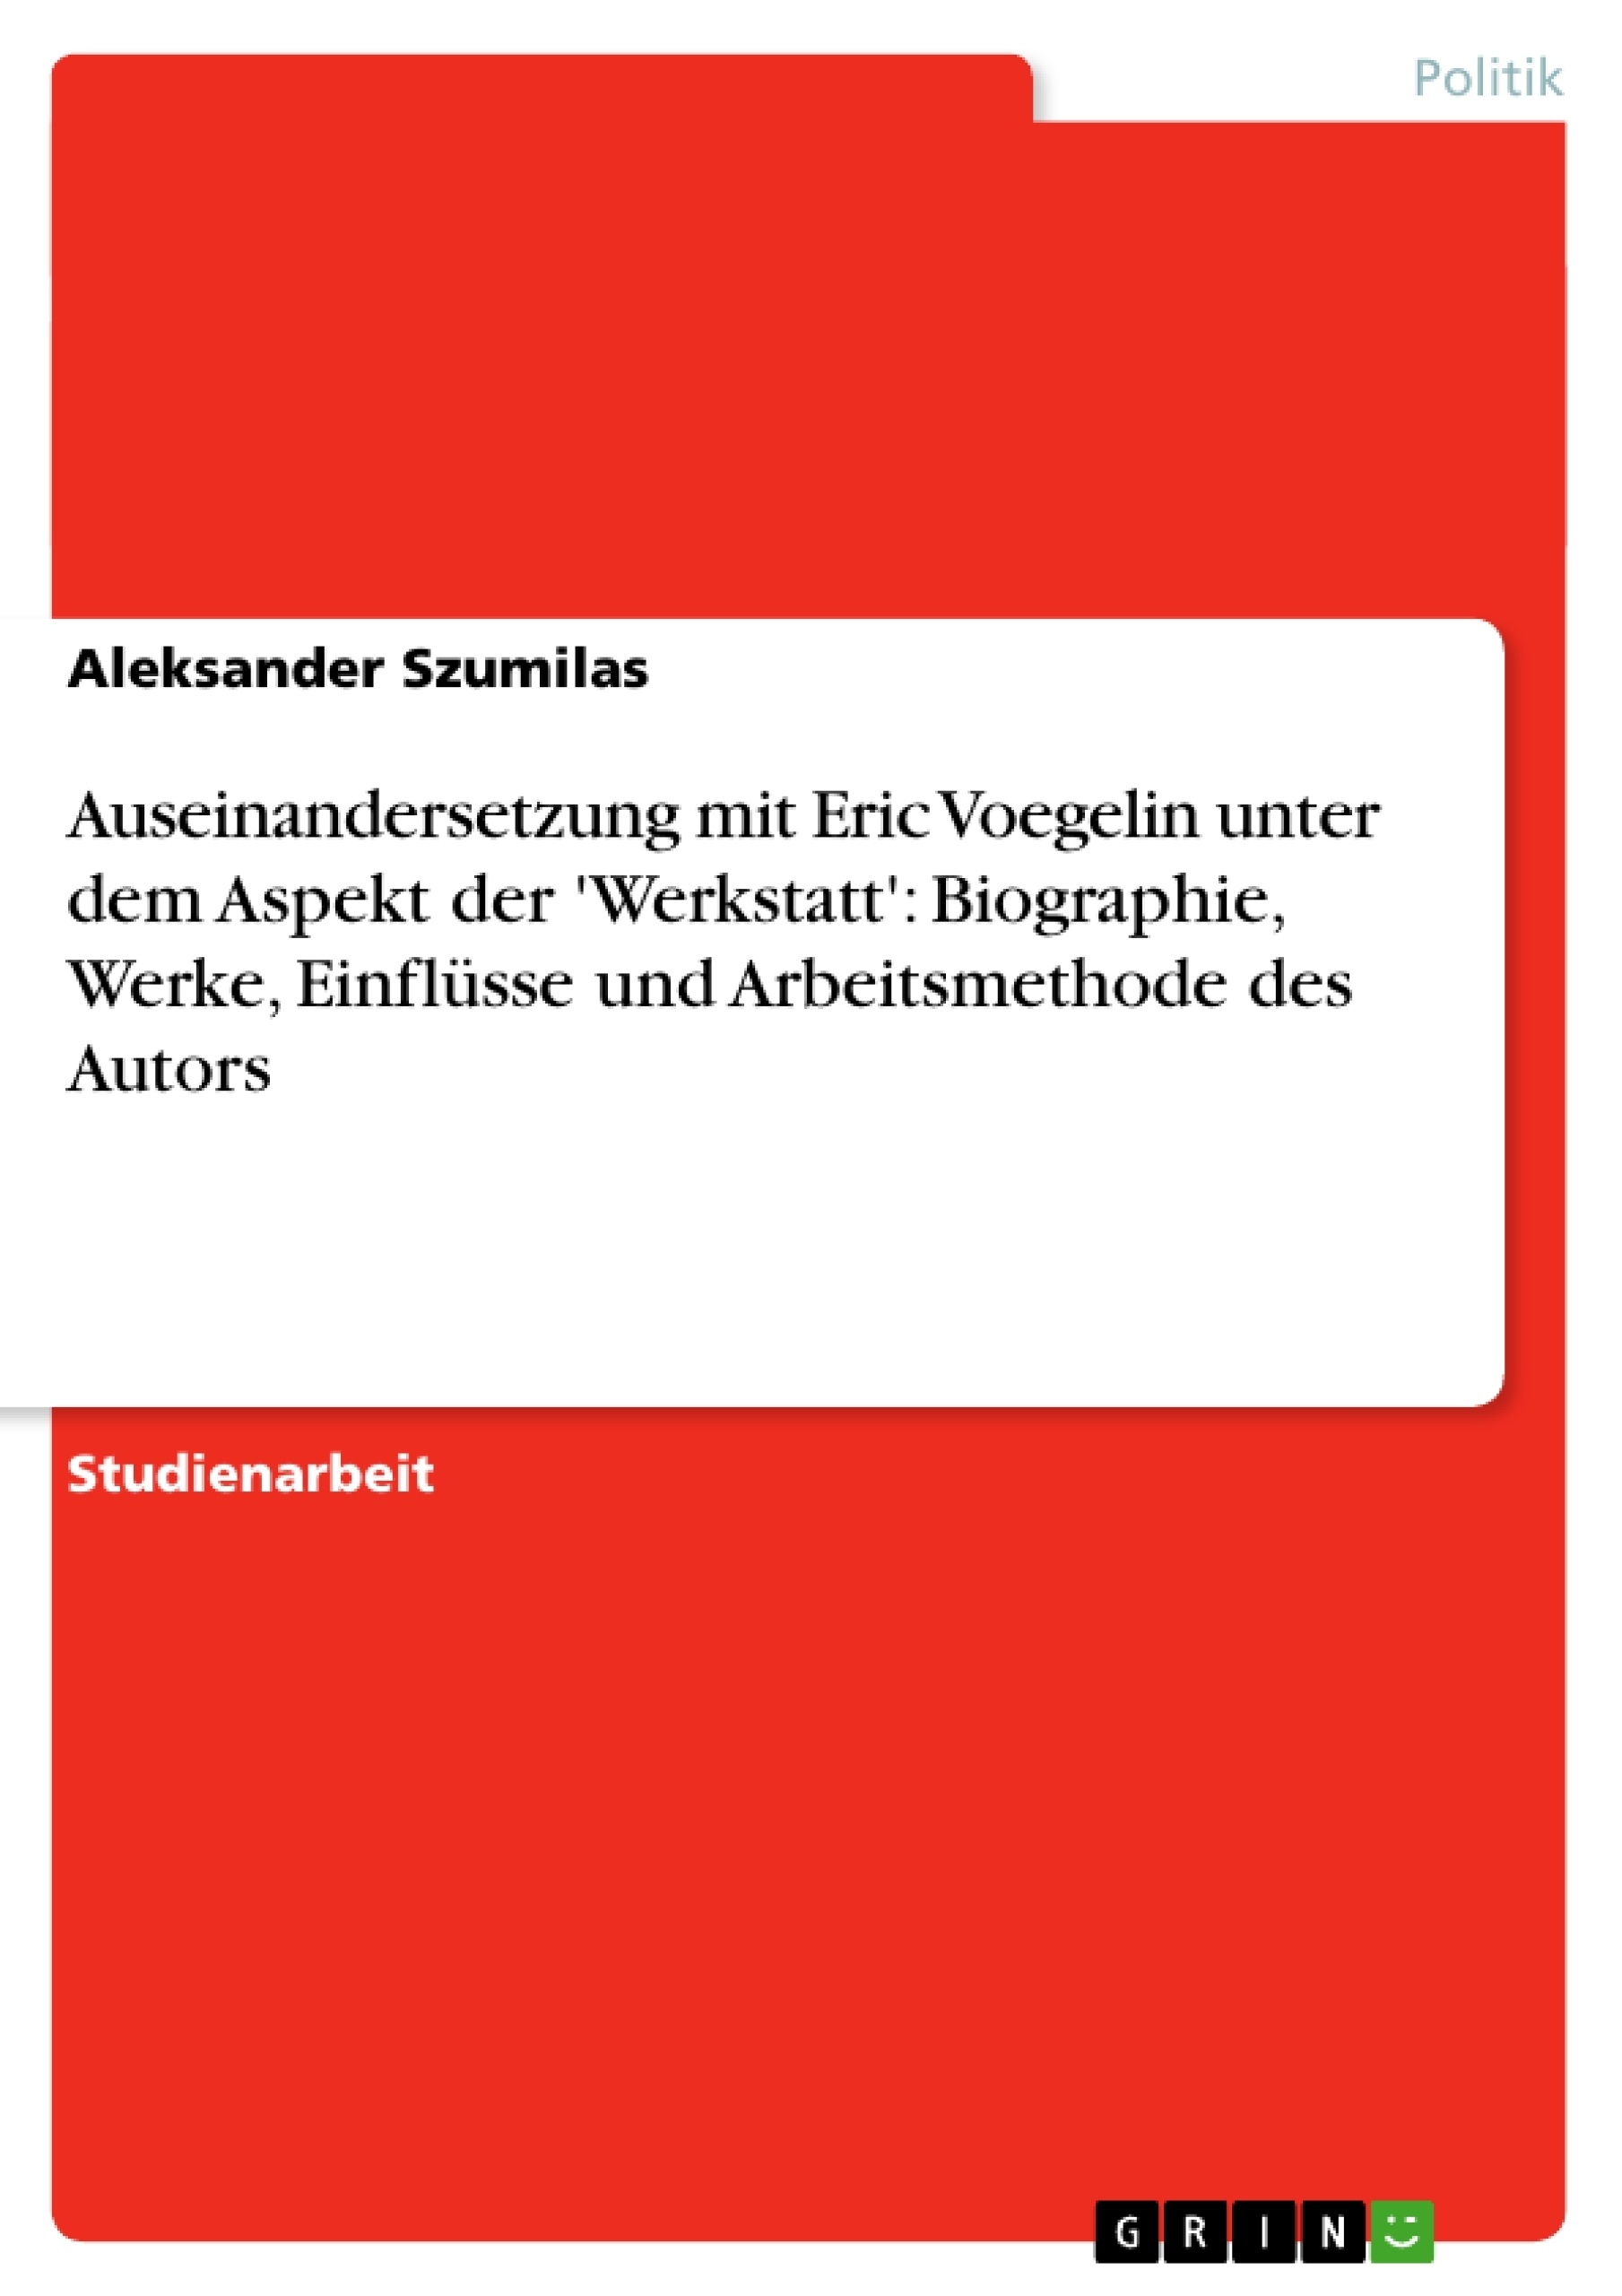 Title: Auseinandersetzung mit Eric Voegelin unter dem Aspekt der 'Werkstatt':  Biographie, Werke, Einflüsse und Arbeitsmethode des Autors